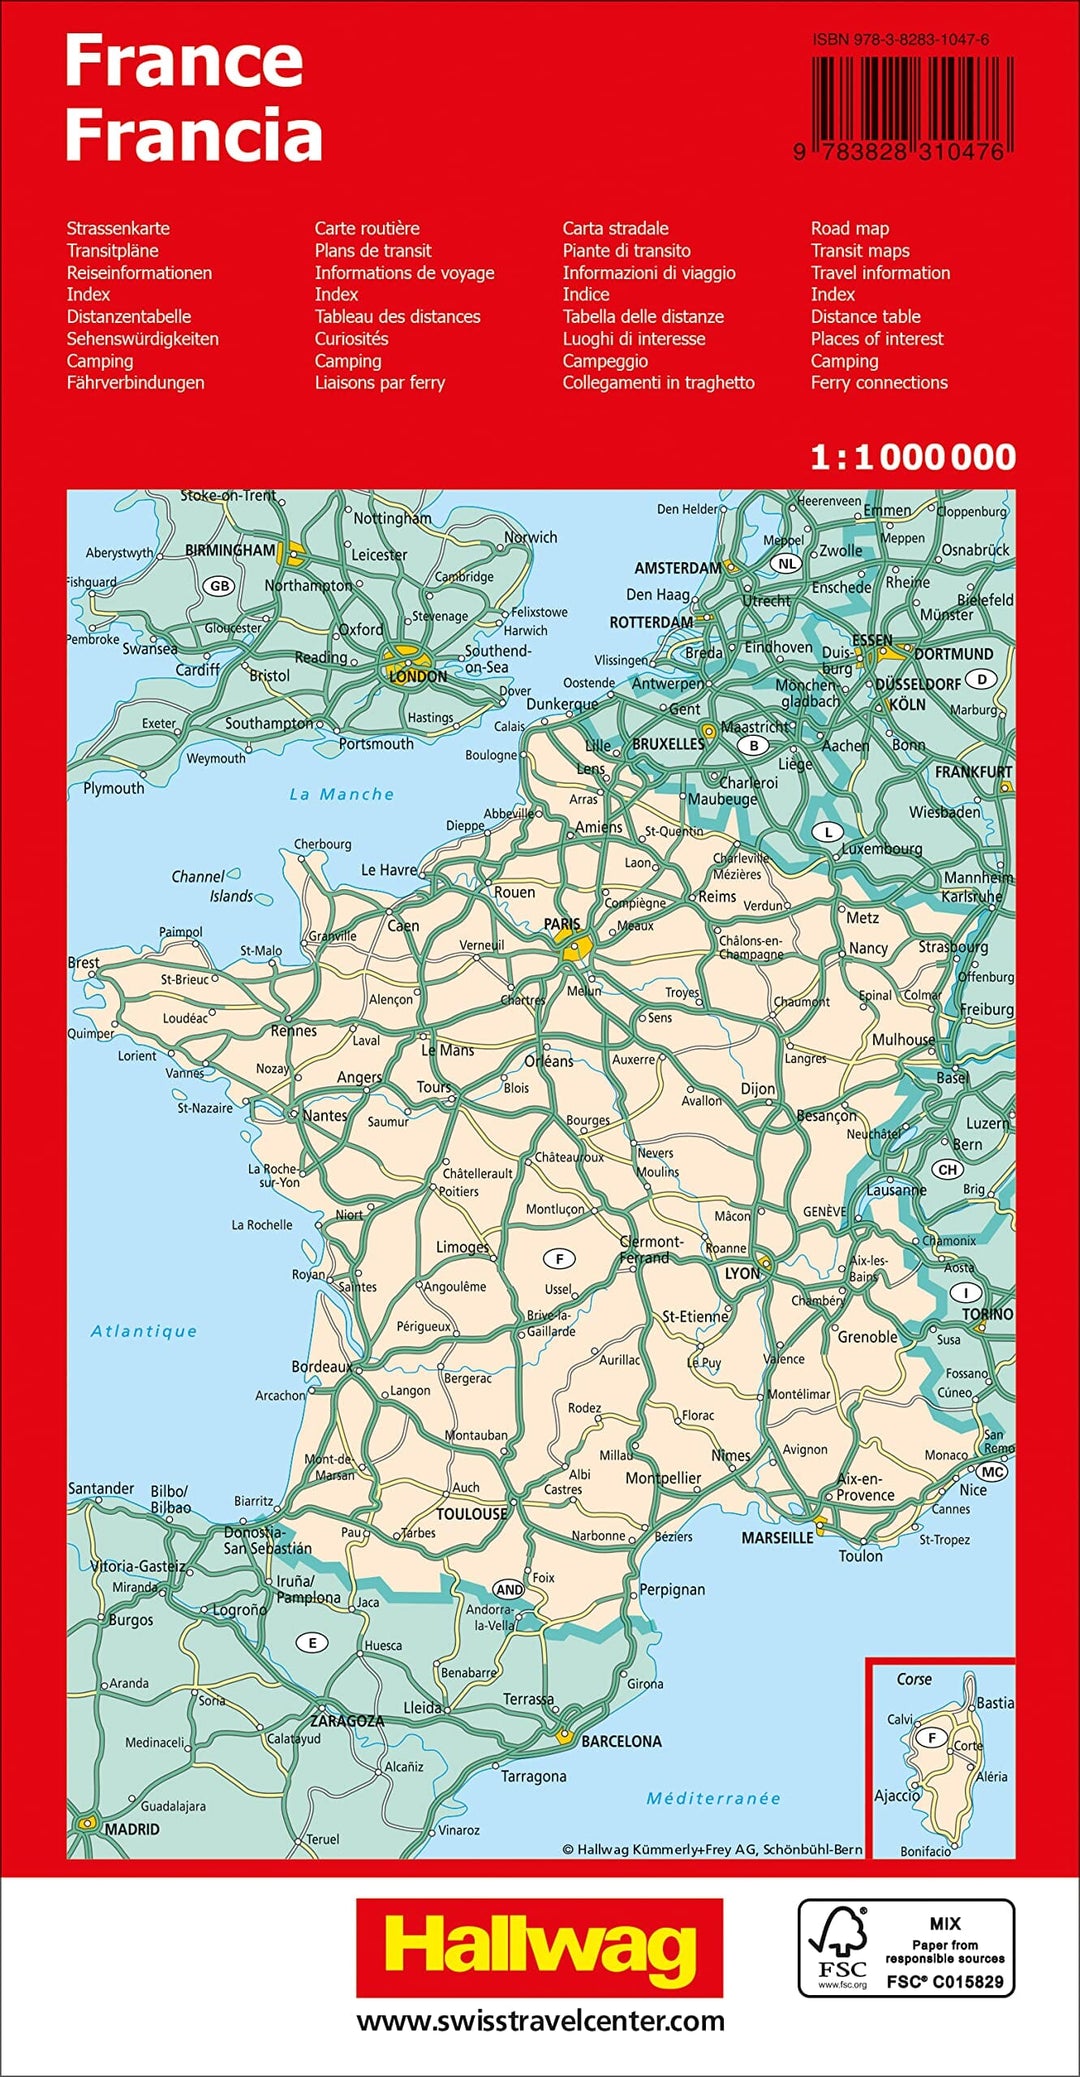 Carte routière - France | Hallwag carte pliée Hallwag 